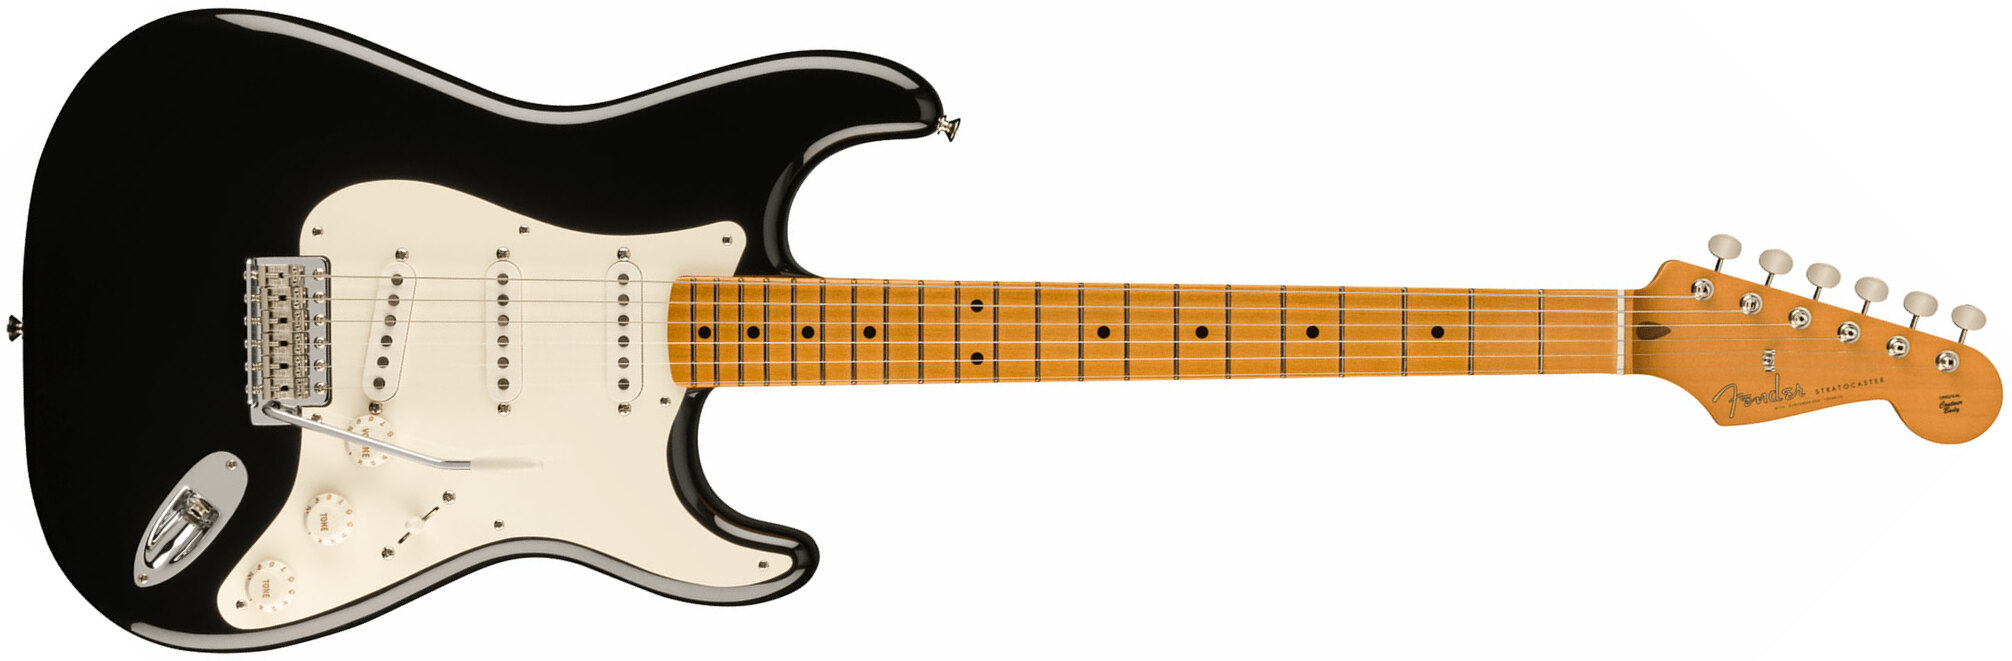 Fender Strat 50s Vintera 2 Mex 3s Trem Mn - Black - Guitare Électrique Forme Str - Main picture